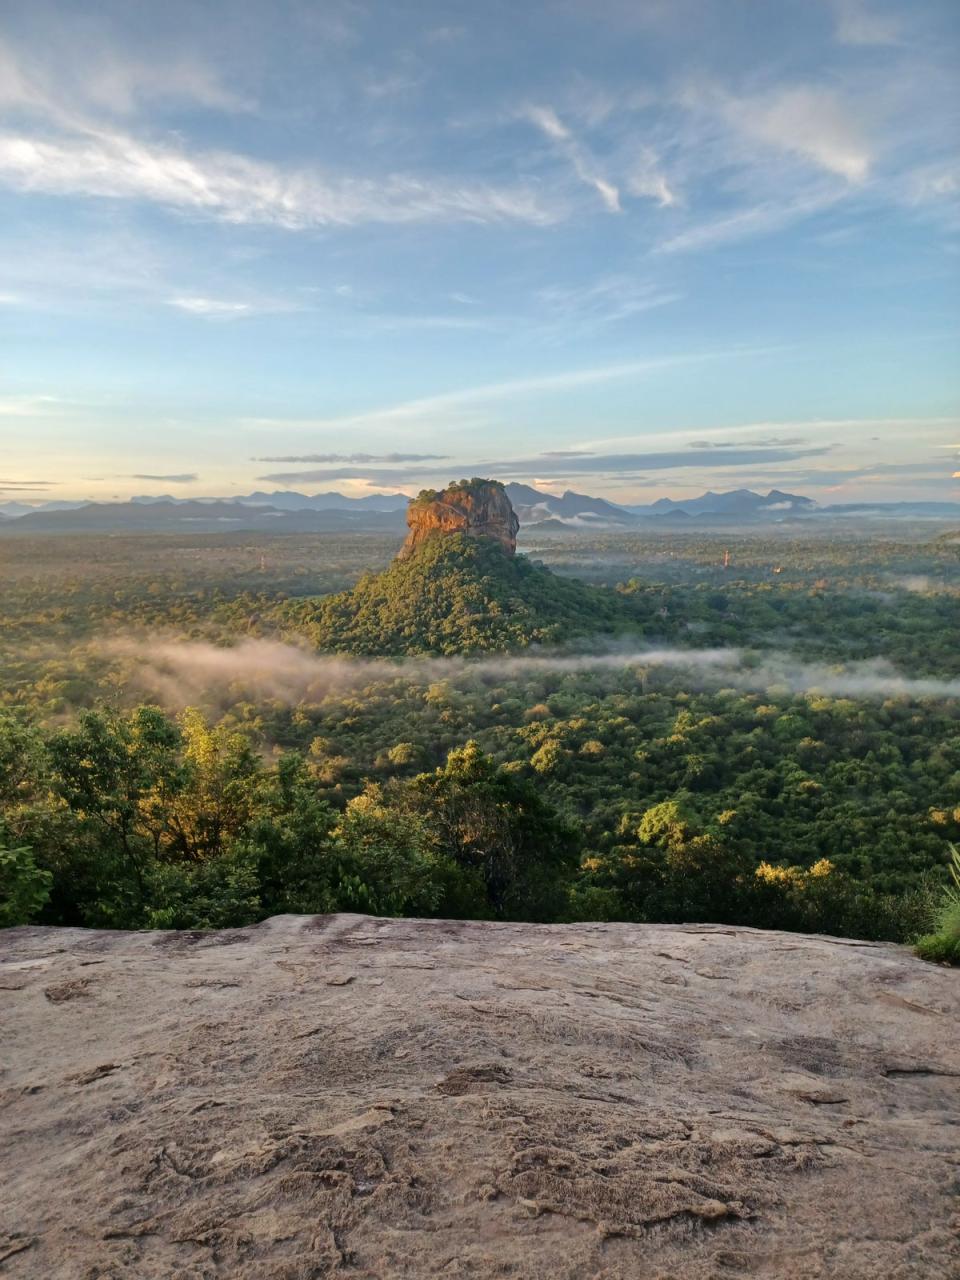 Sigiriya Rock in Sri Lanka (Vicky Jessop)